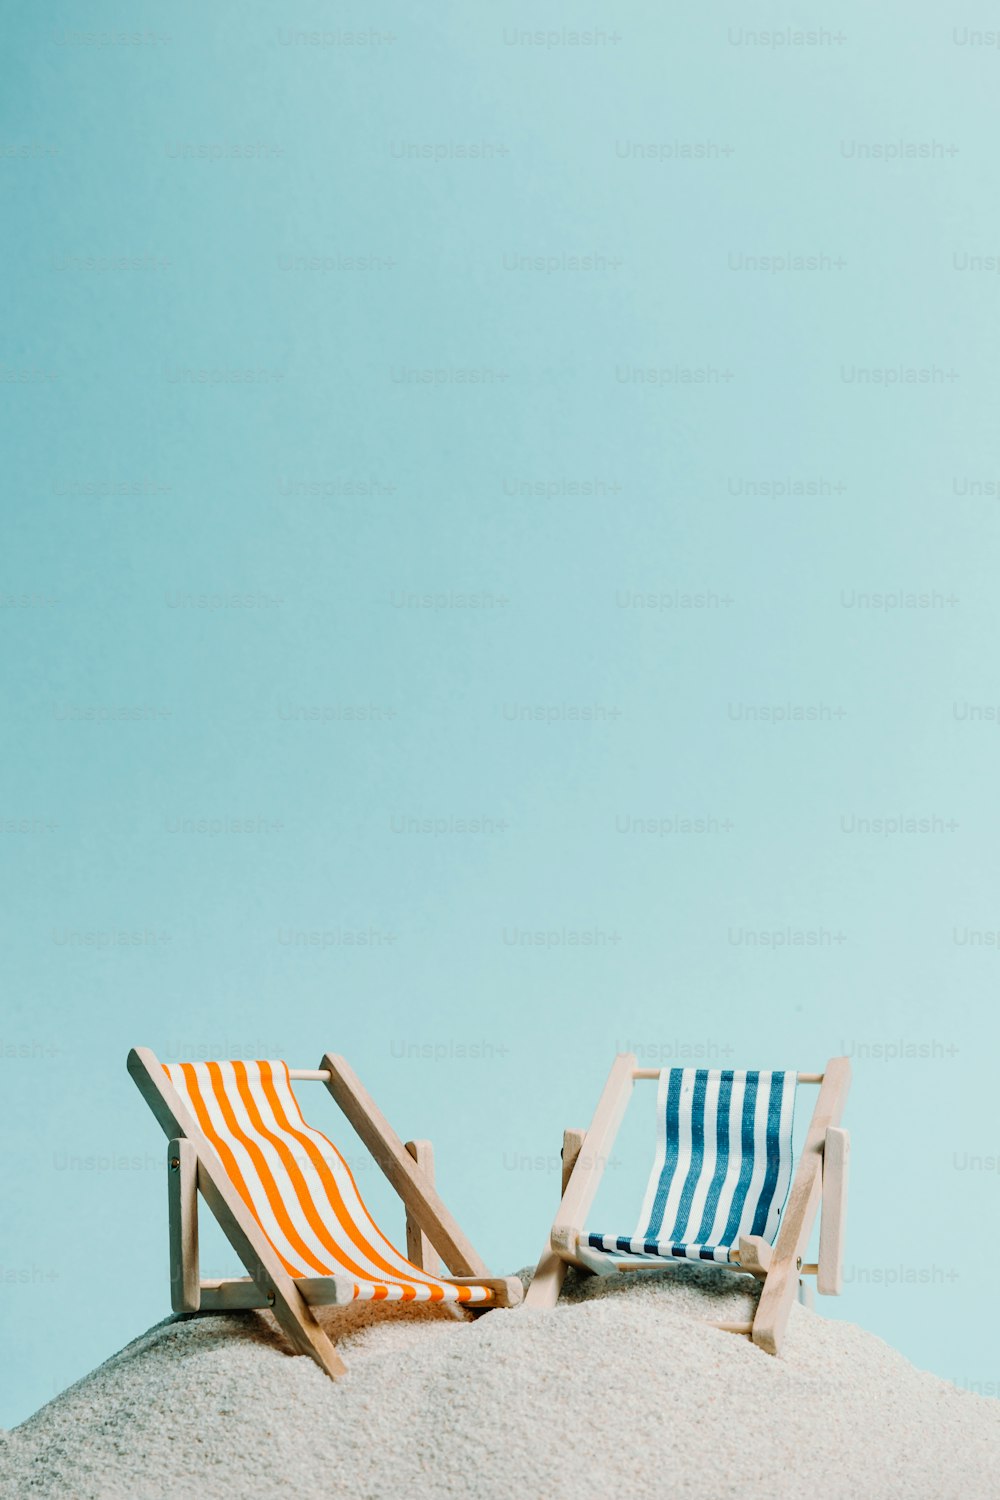 quelques chaises assises au sommet d’une plage de sable